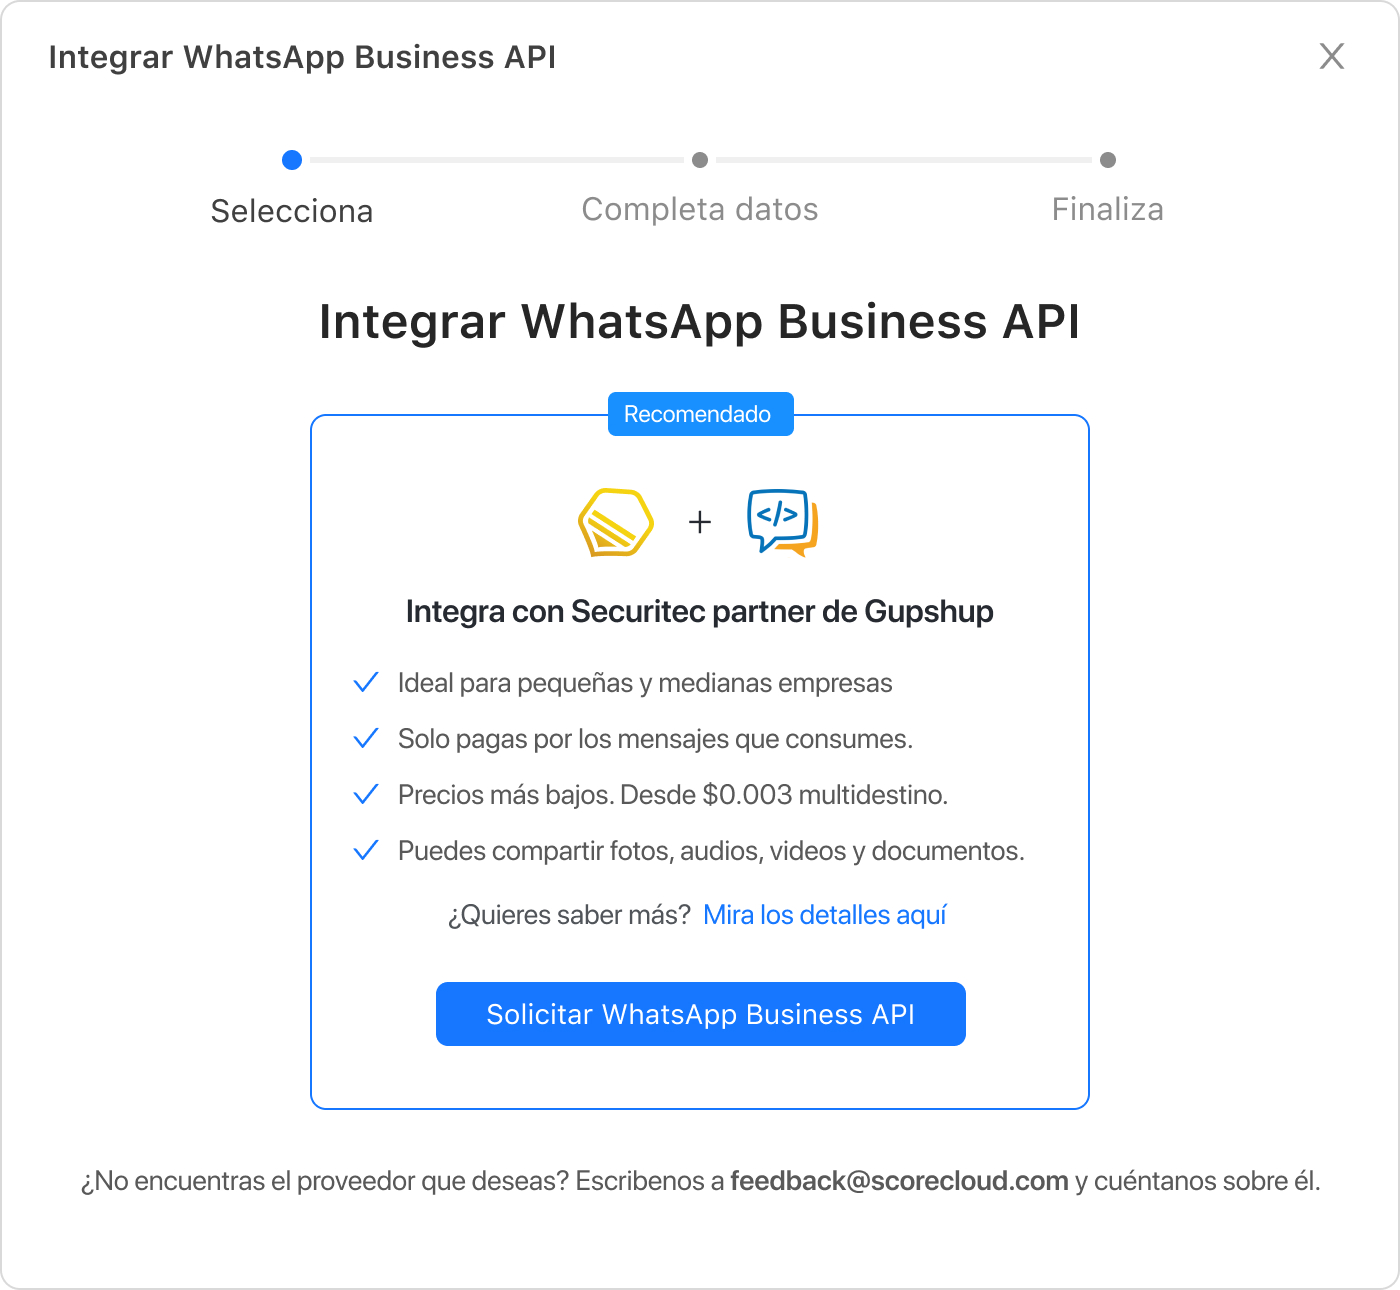 Solicitar WhatsApp Business API